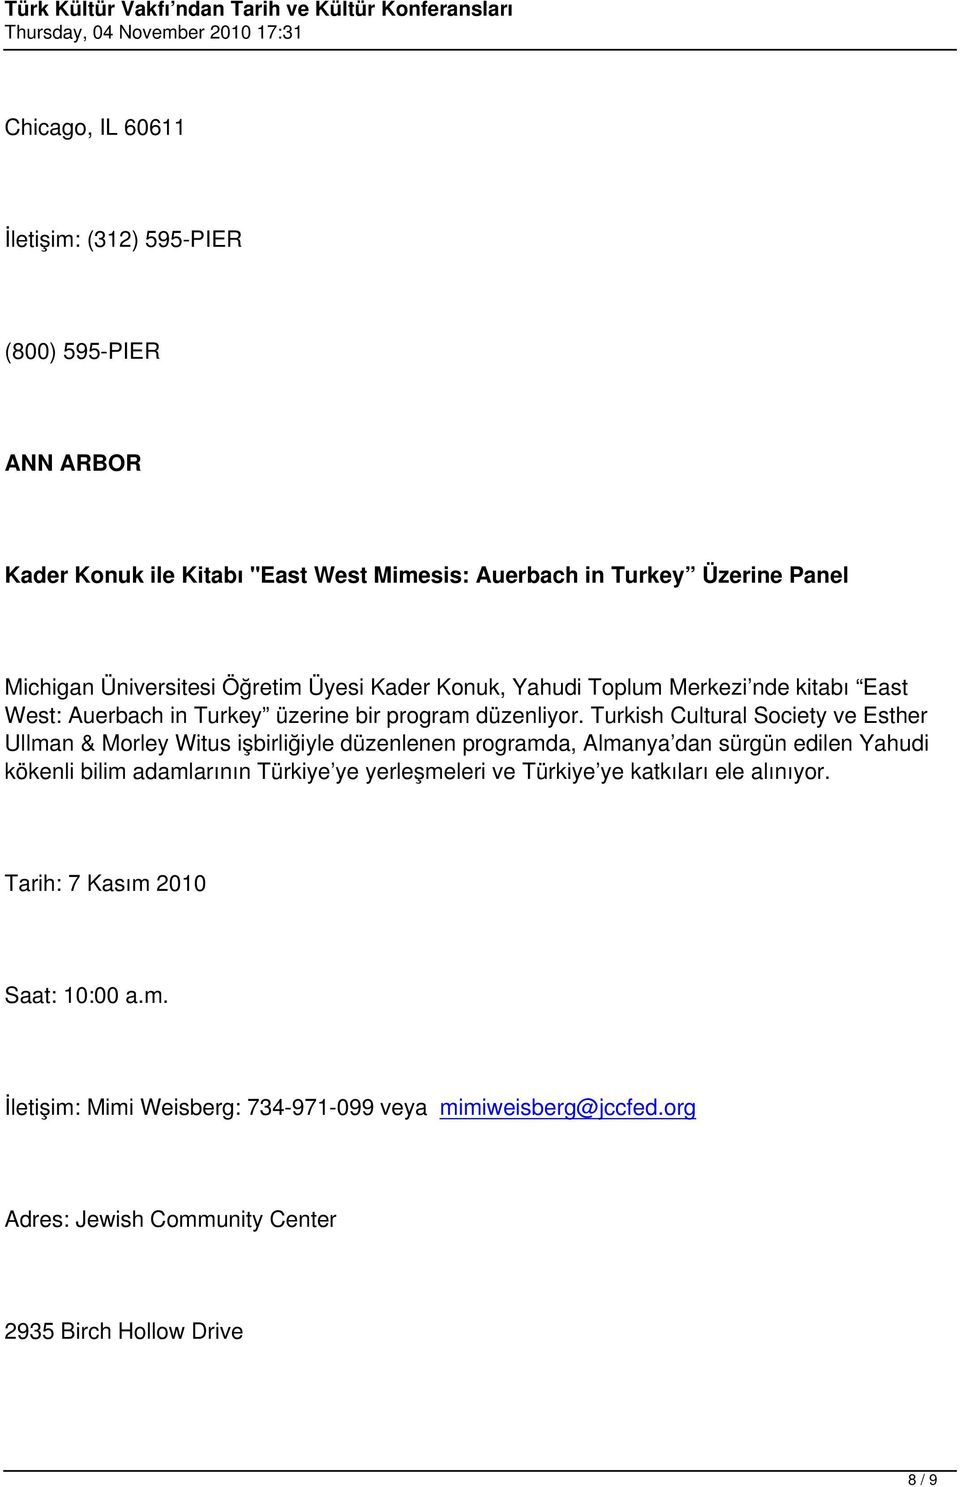 Turkish Cultural Society ve Esther Ullman & Morley Witus işbirliğiyle düzenlenen programda, Almanya dan sürgün edilen Yahudi kökenli bilim adamlarının Türkiye ye